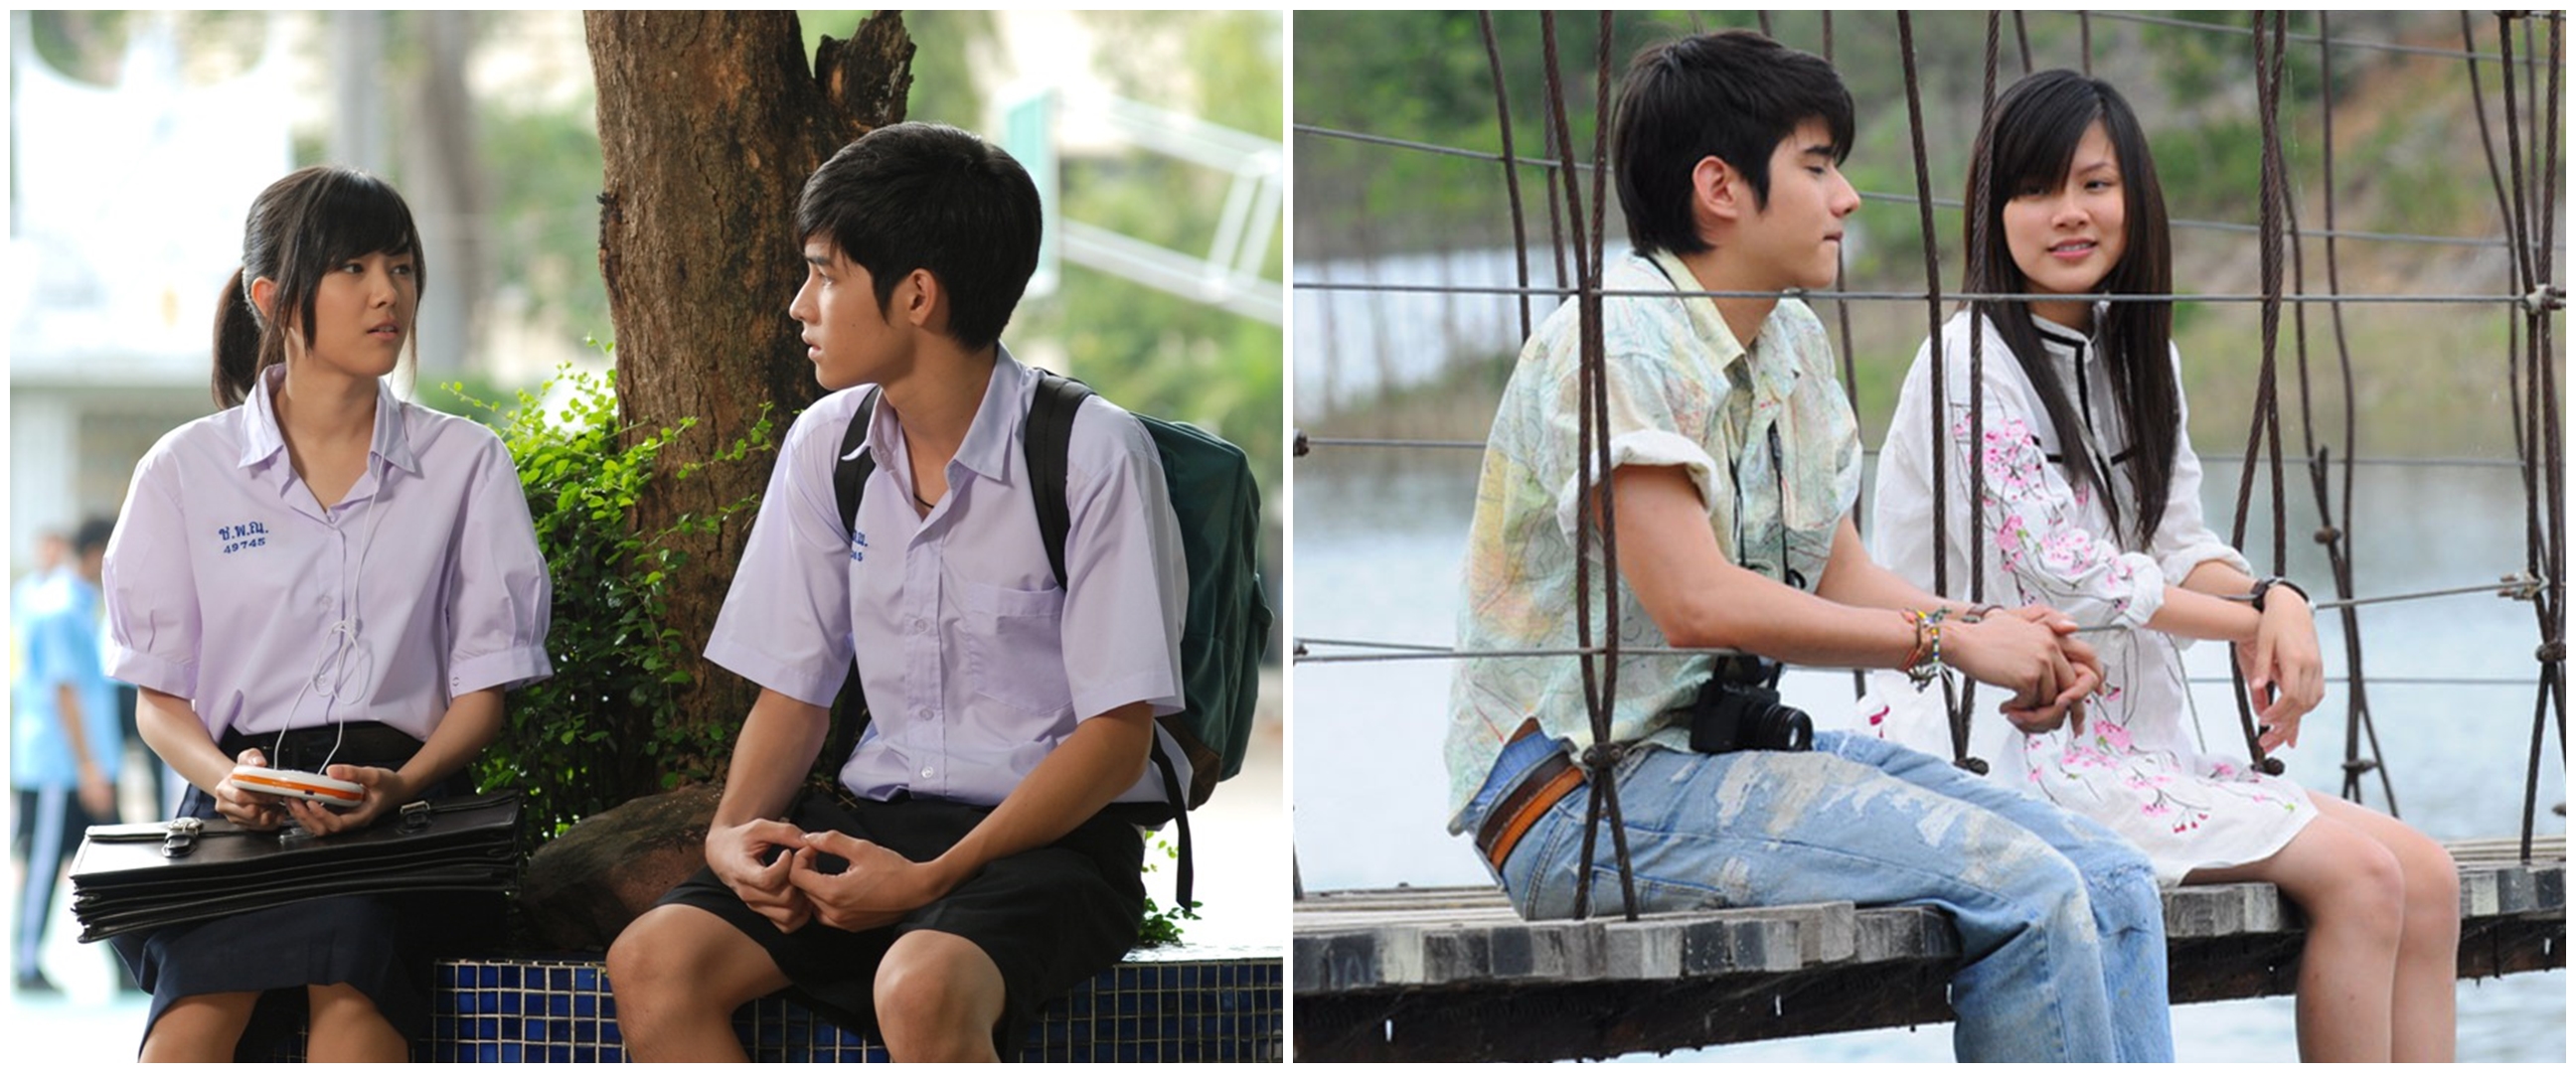 6 Film Thailand kisah cinta anak sekolahan, bikin baper